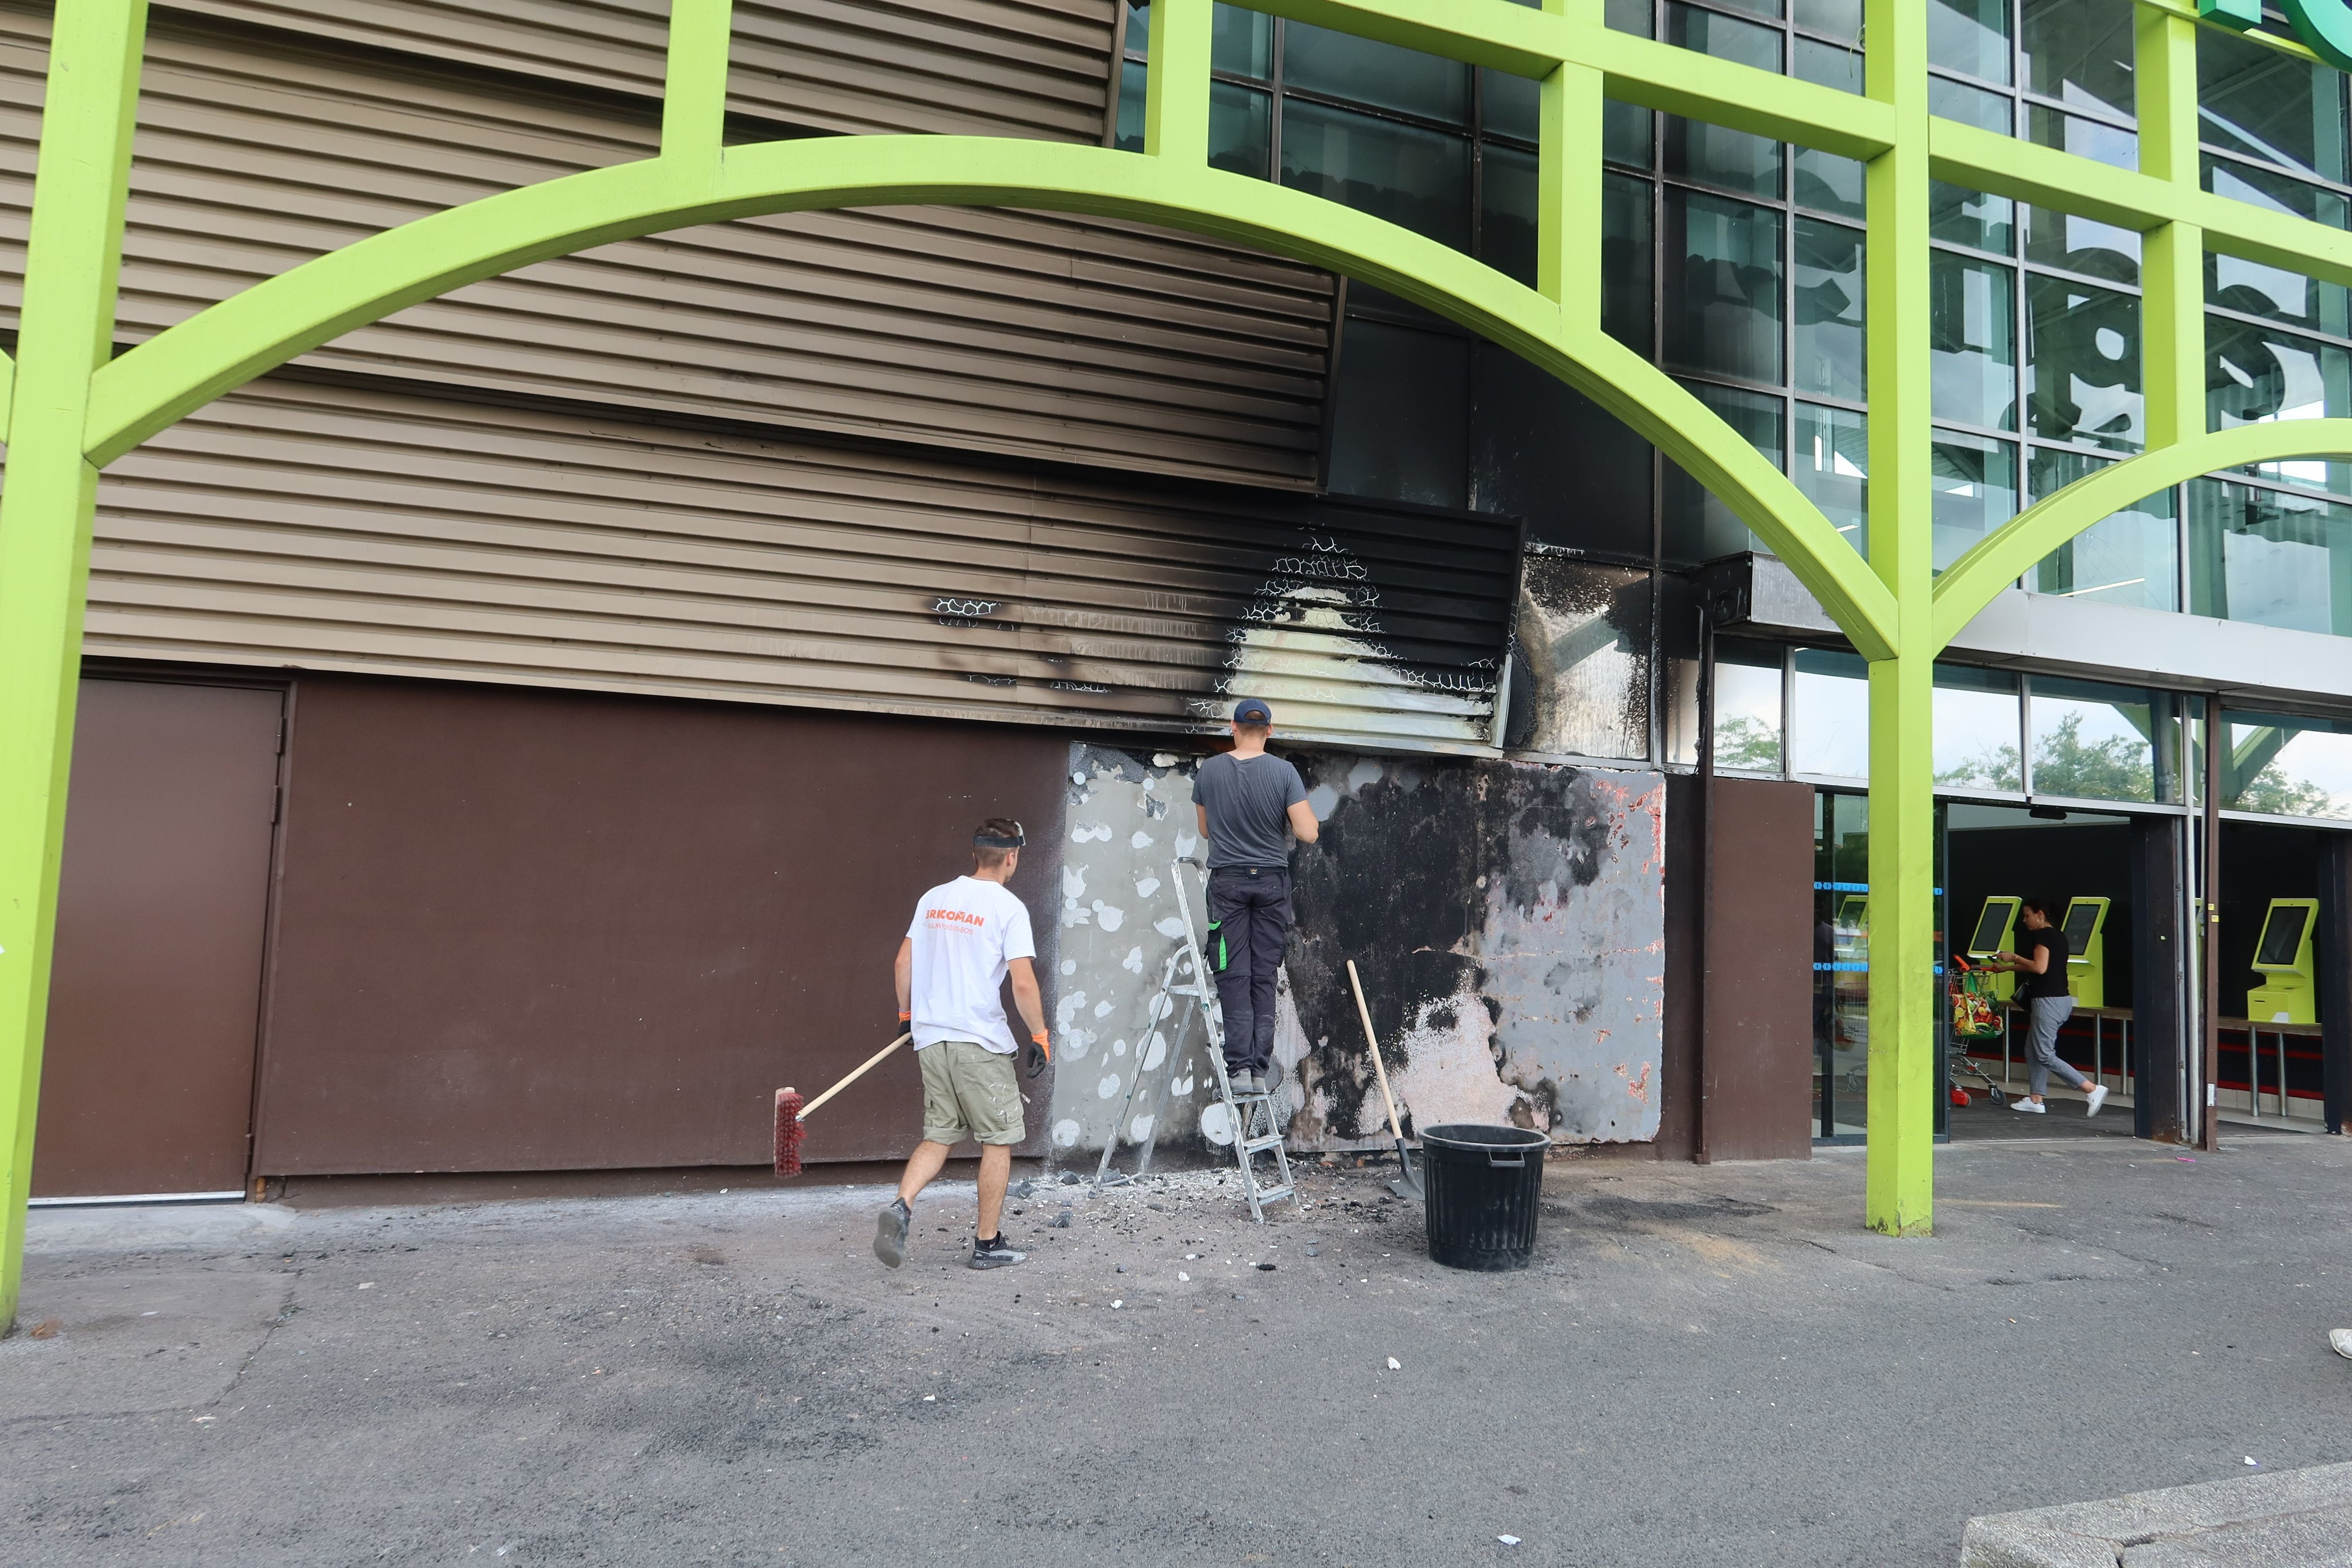 Meaux (Seine-et-Marne), vendredi 30 juin. Lors des émeutes, la façade d'une grande surface du centre commercial La Verrière a été incendiée. LP/Sébastien Roselé